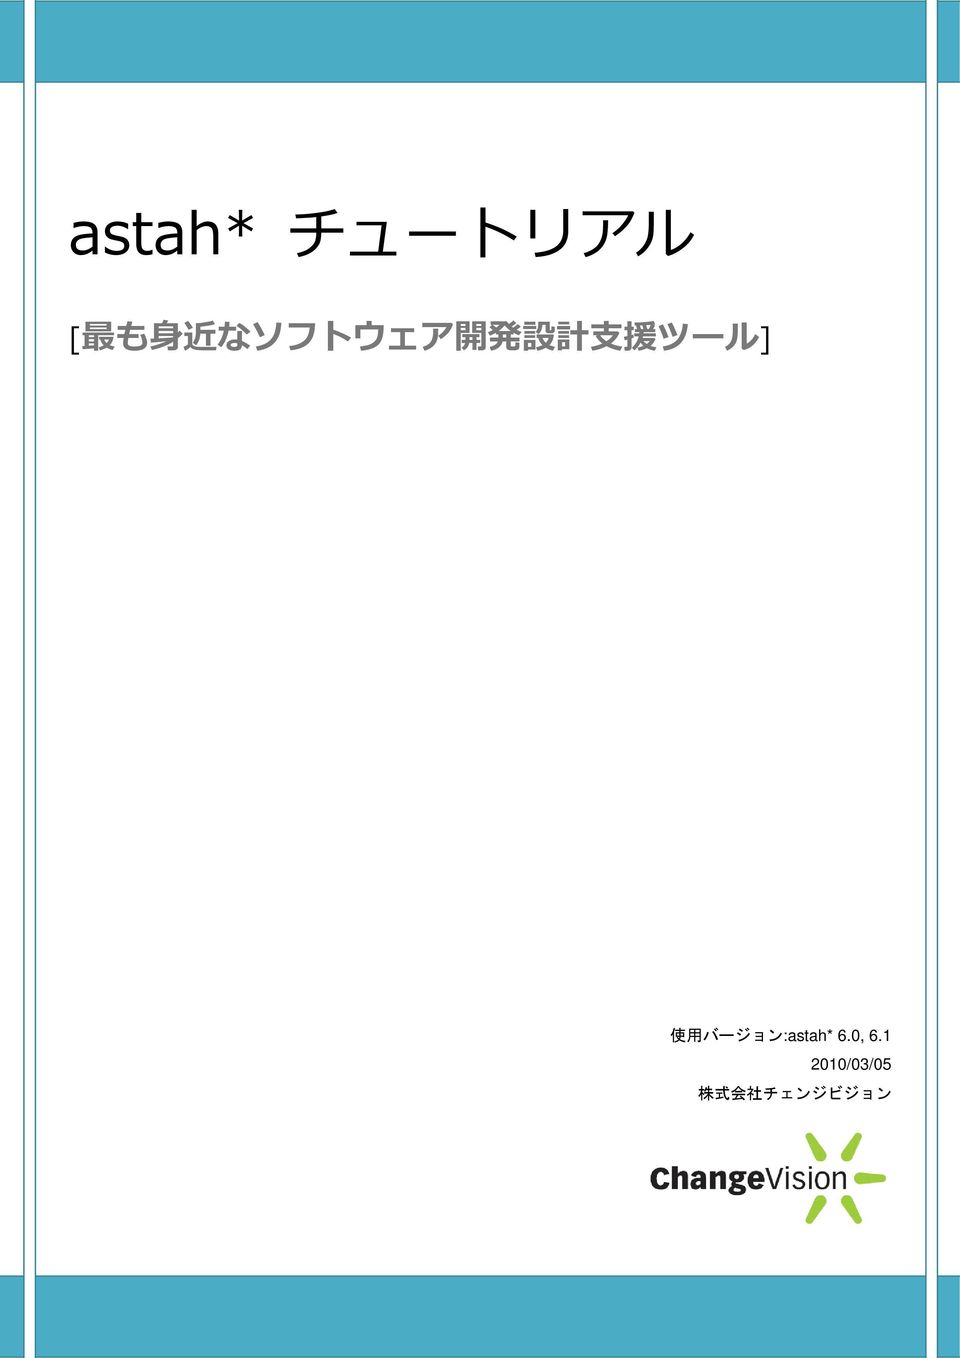 バージョン:astah* 6.0, 6.